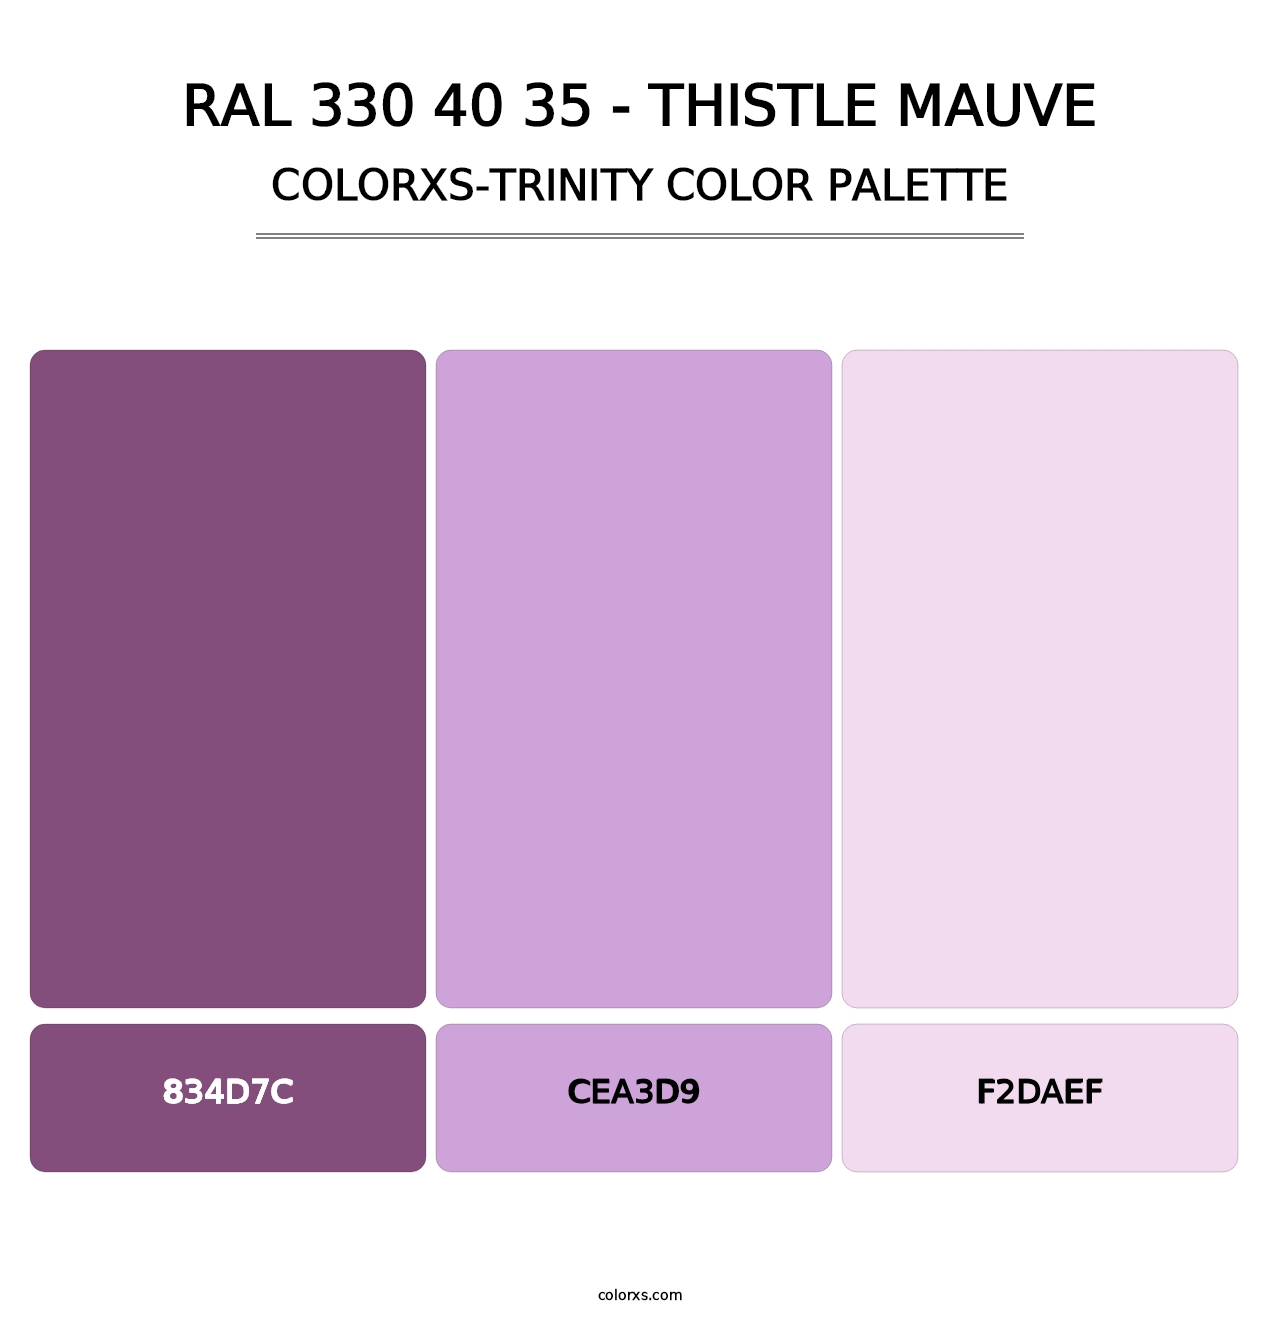 RAL 330 40 35 - Thistle Mauve - Colorxs Trinity Palette